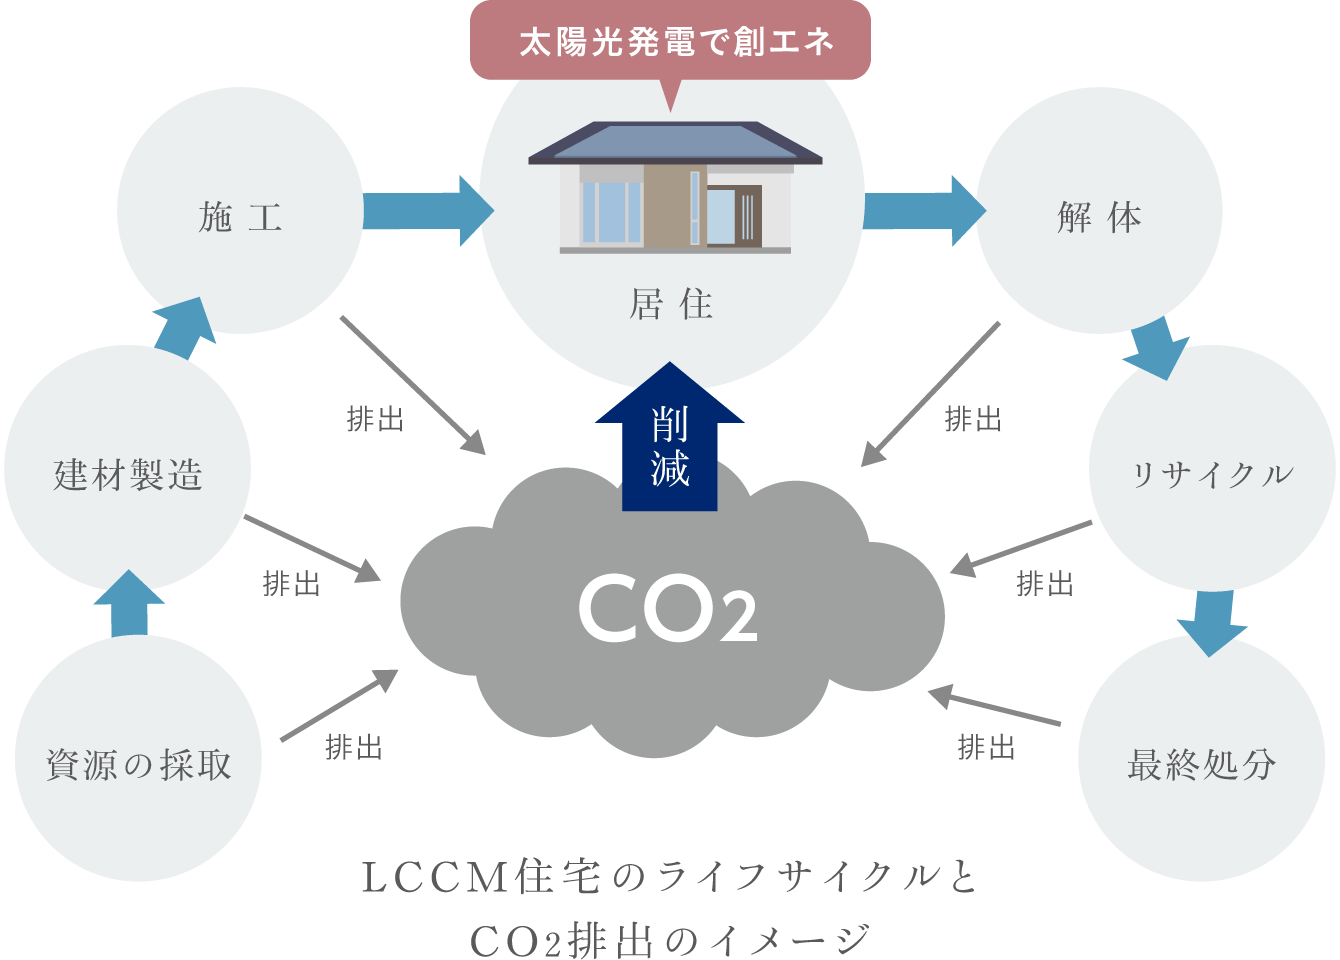 LCCM住宅のライフサイクルとCO2排出のイメージ